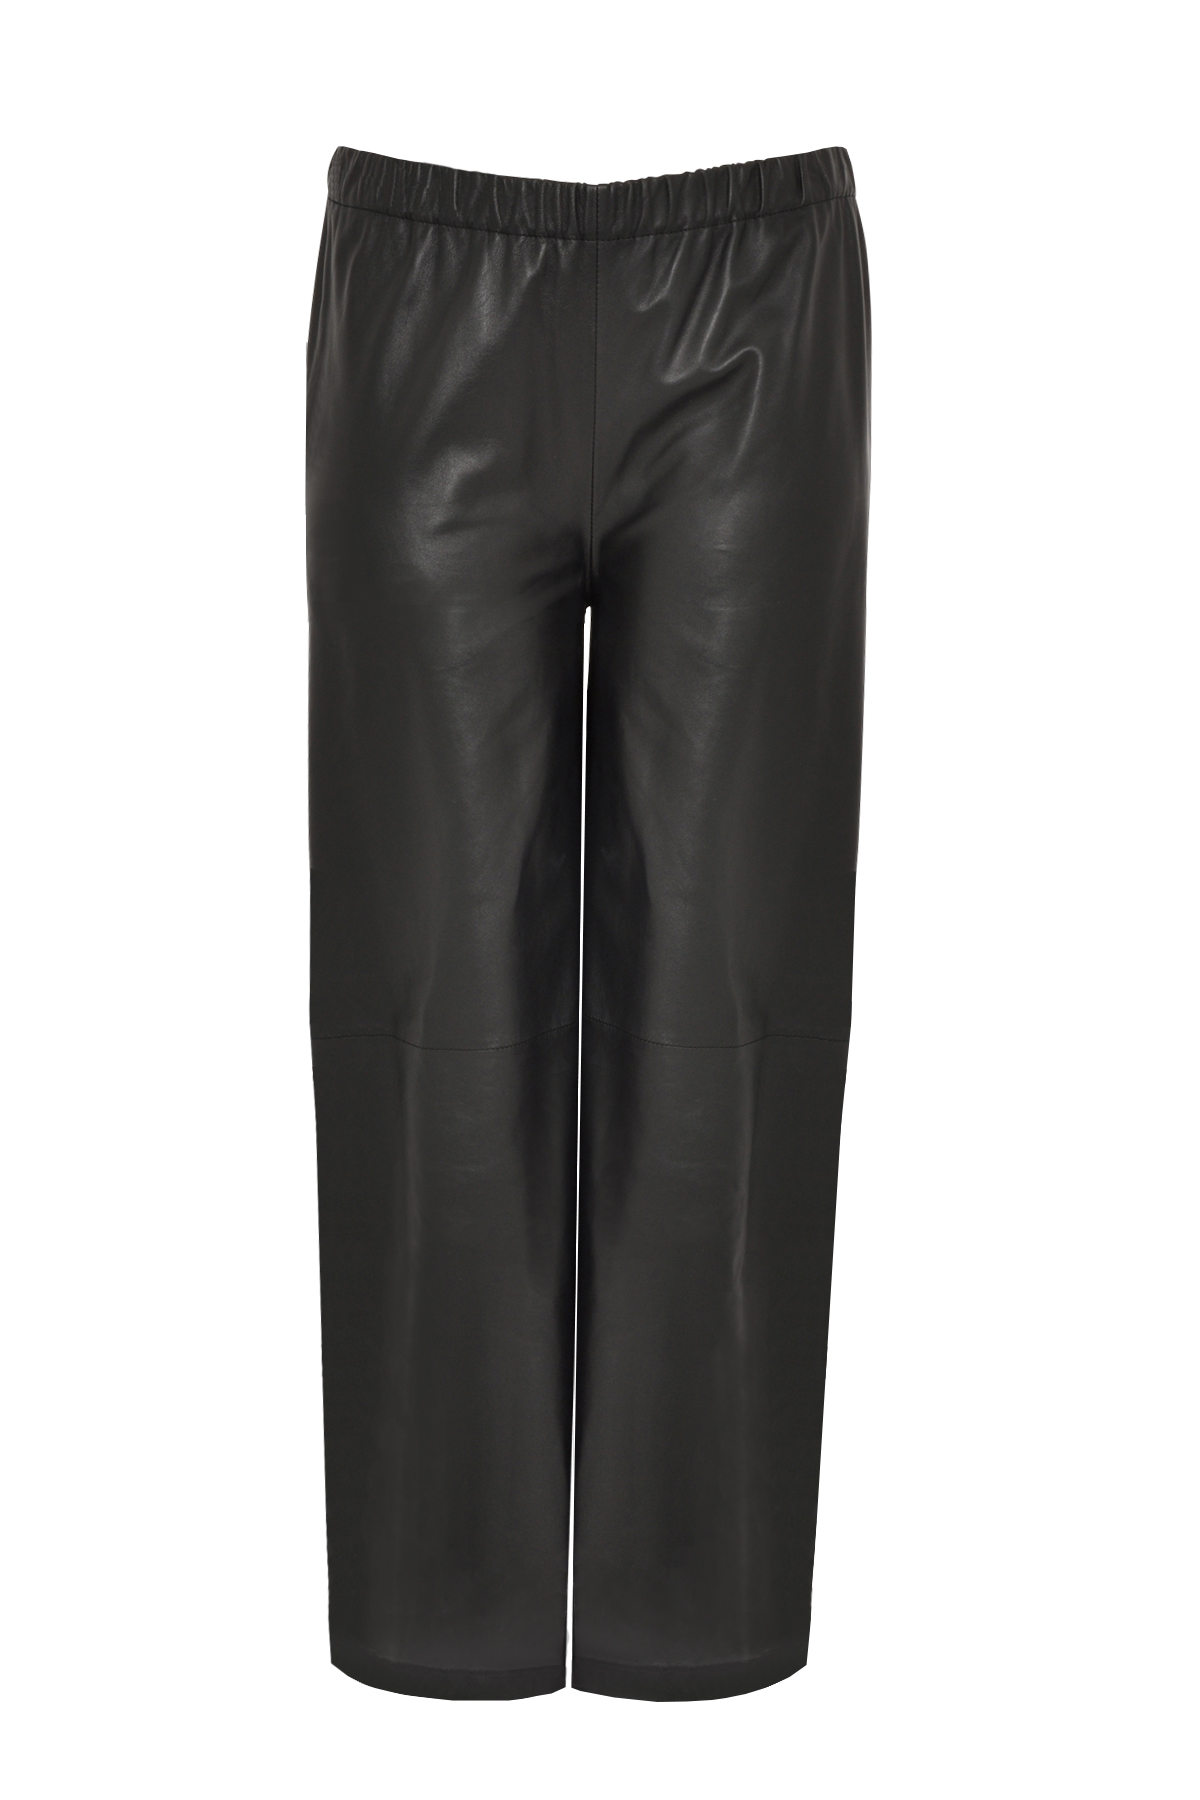 Yoek | Trousers wide leather